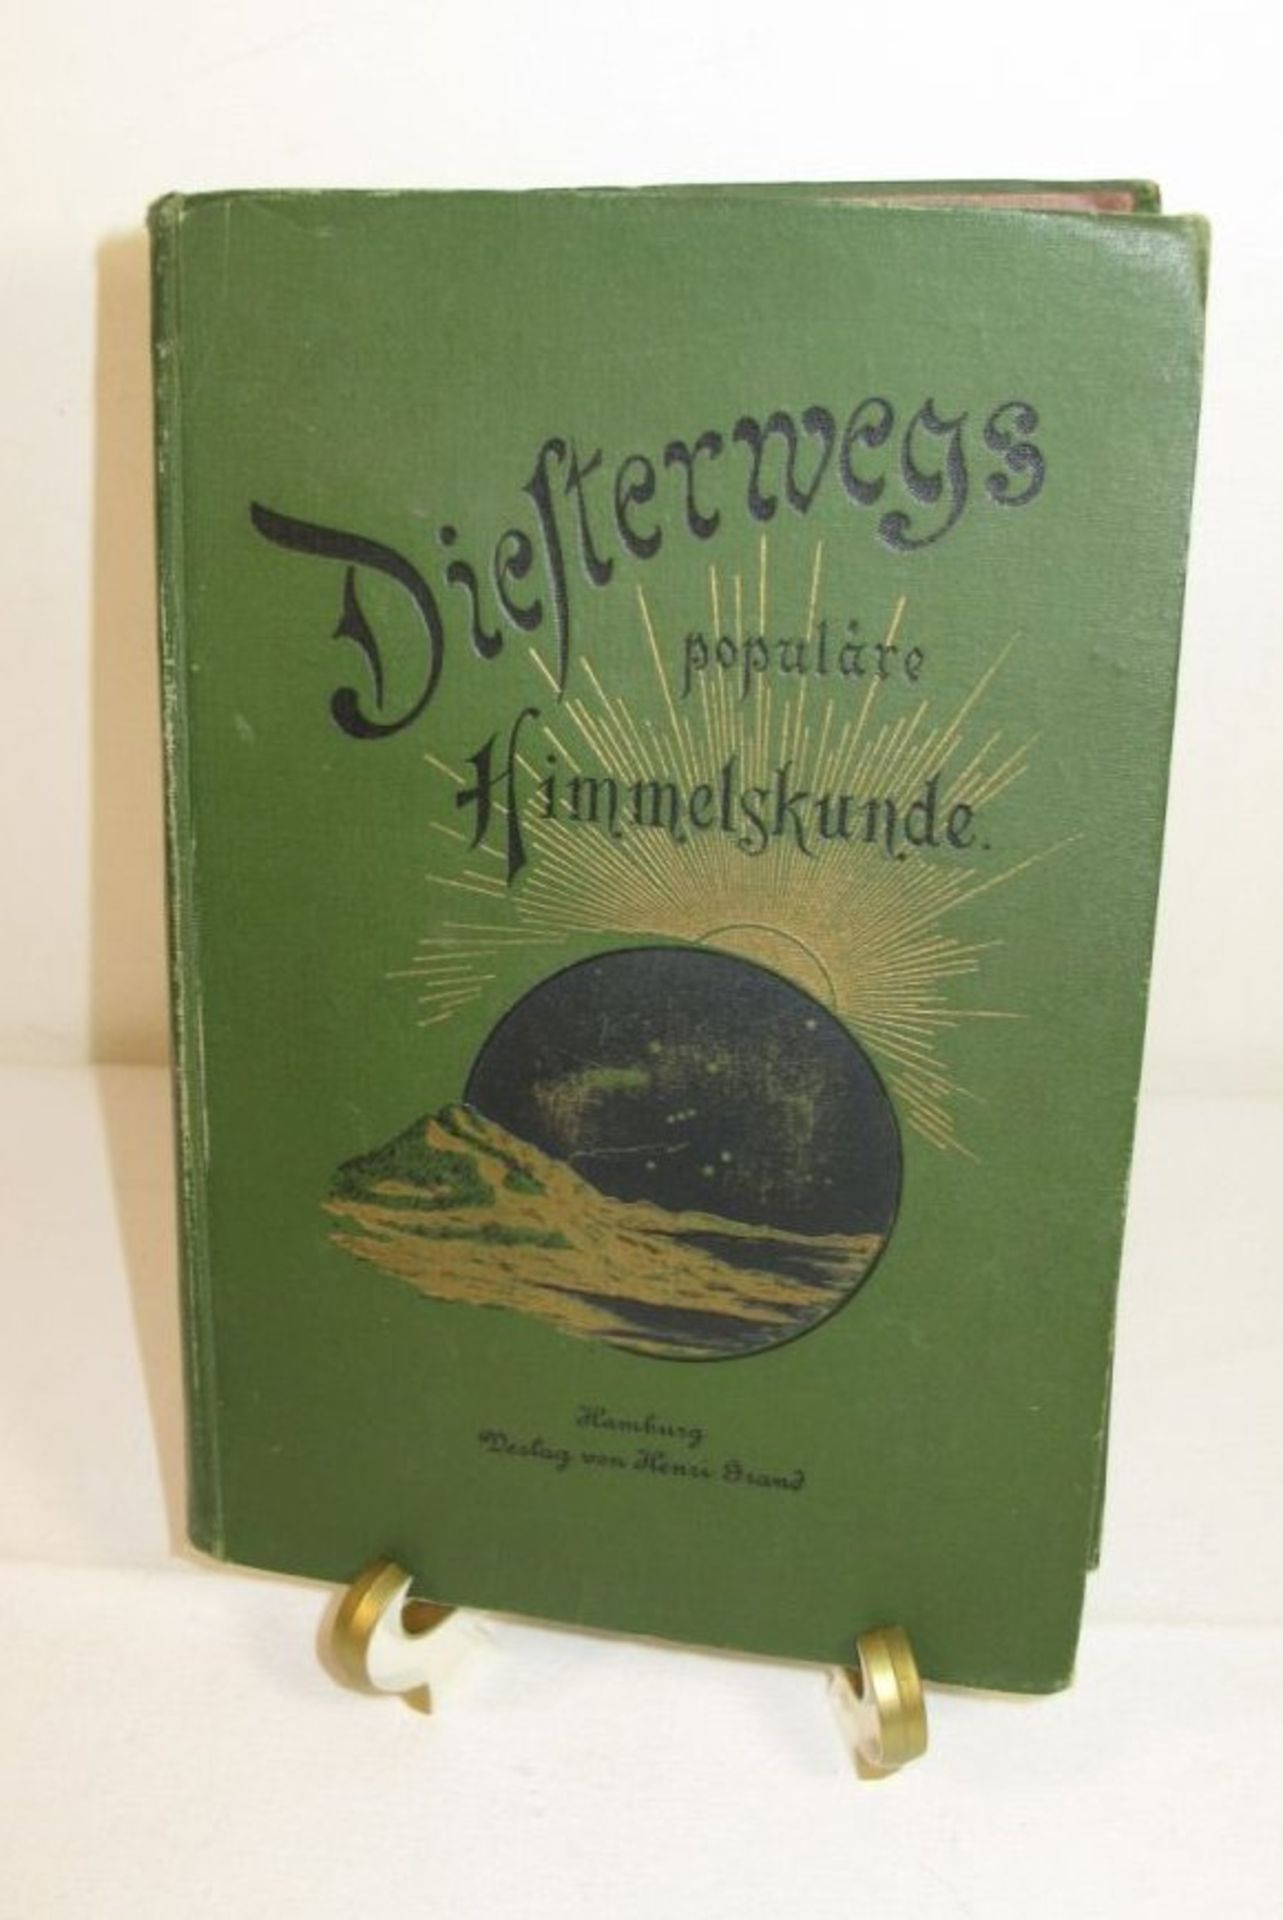 Diesterwegs populäre Himmelskunde, Arnold Schwaßmann, Hamburg 1914, Alters-u. Gebrauchsspur